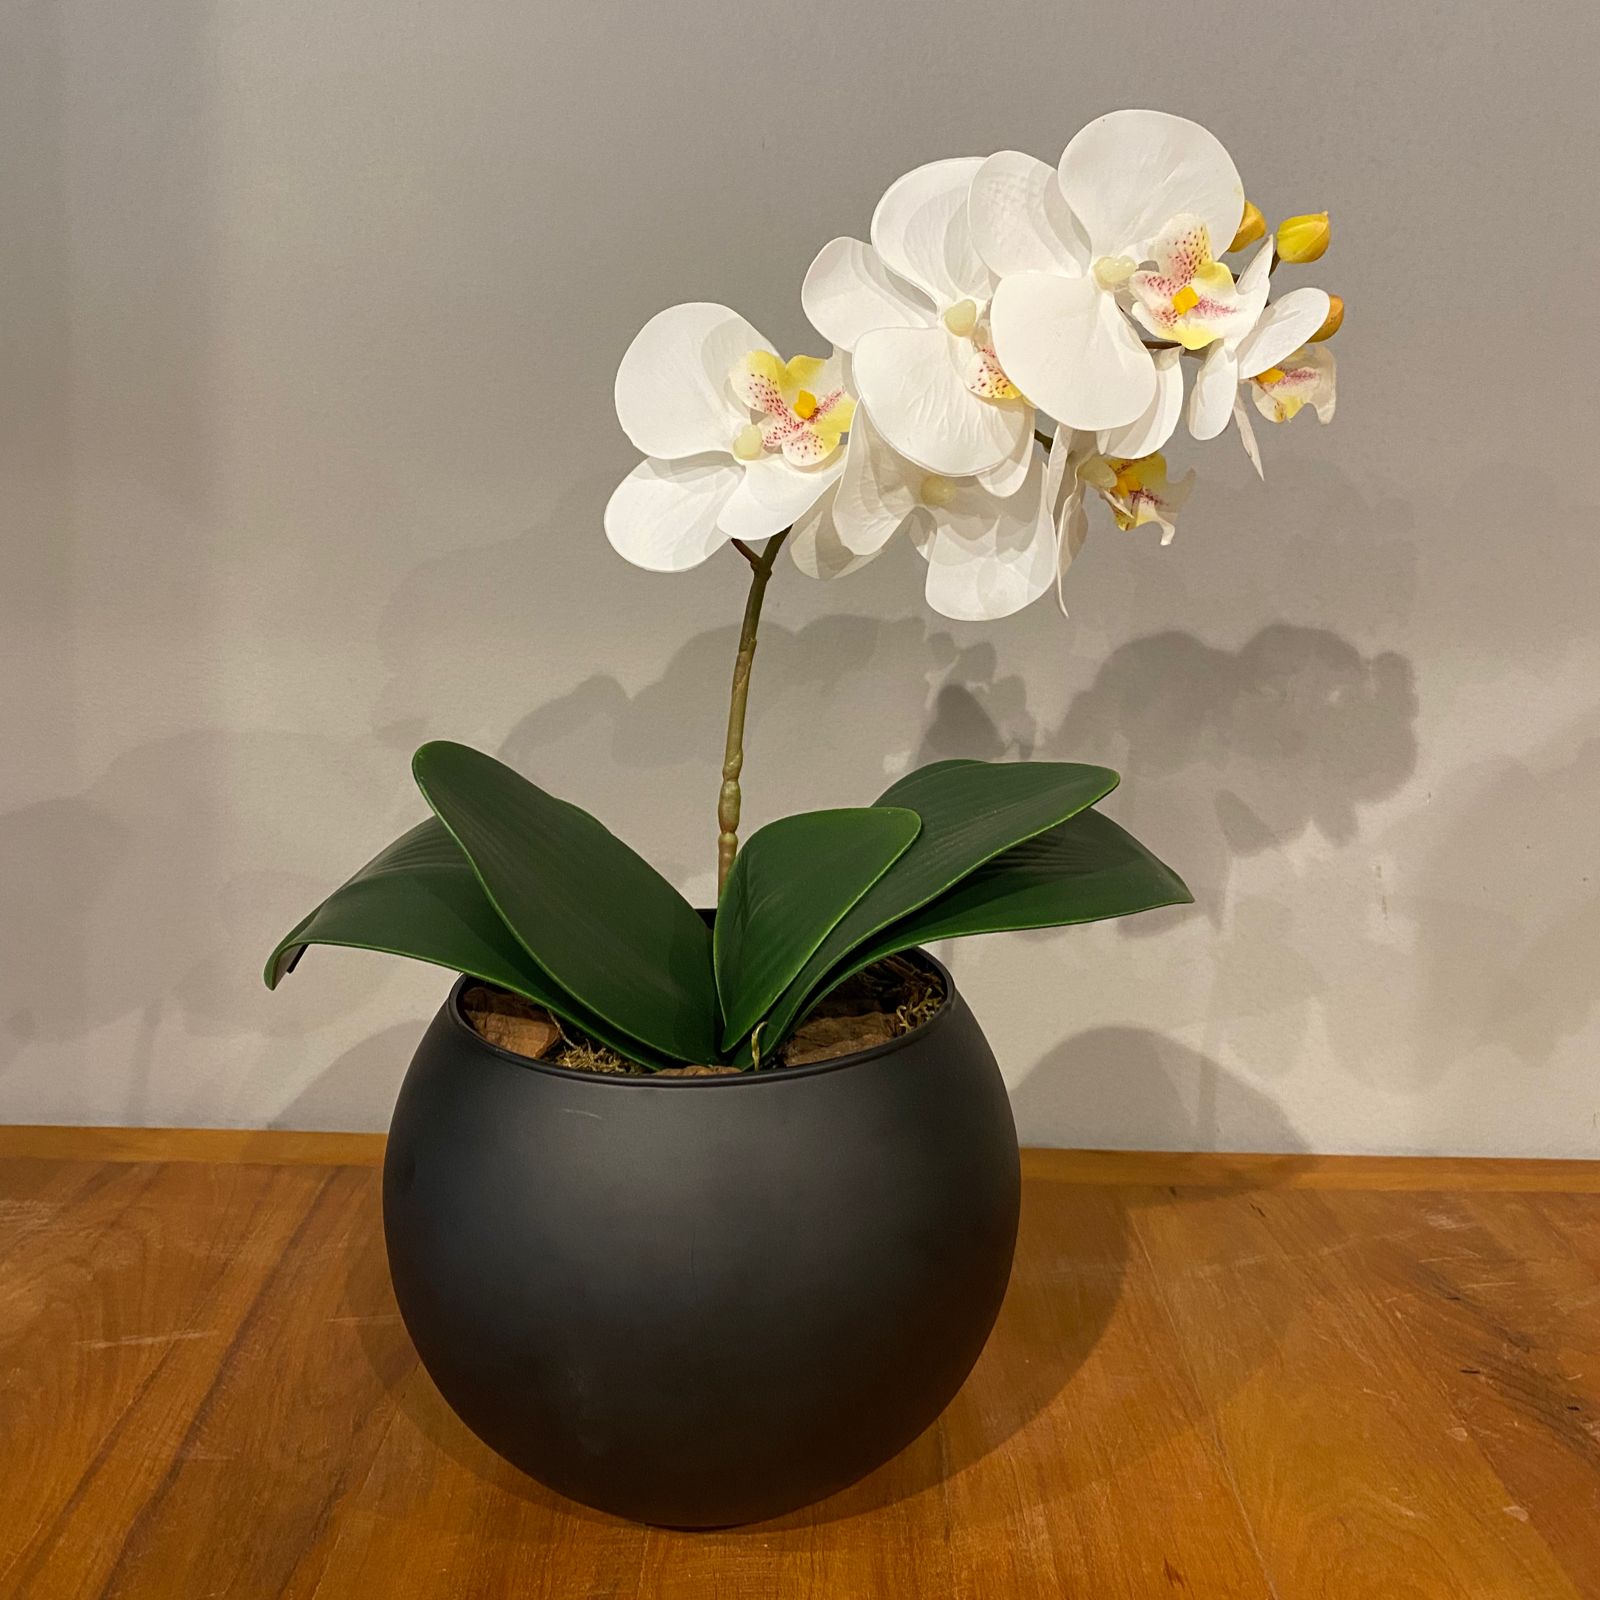 Arranjo Toque Real Centro de Mesa Orquídea Branca Artificial no Vaso Preto